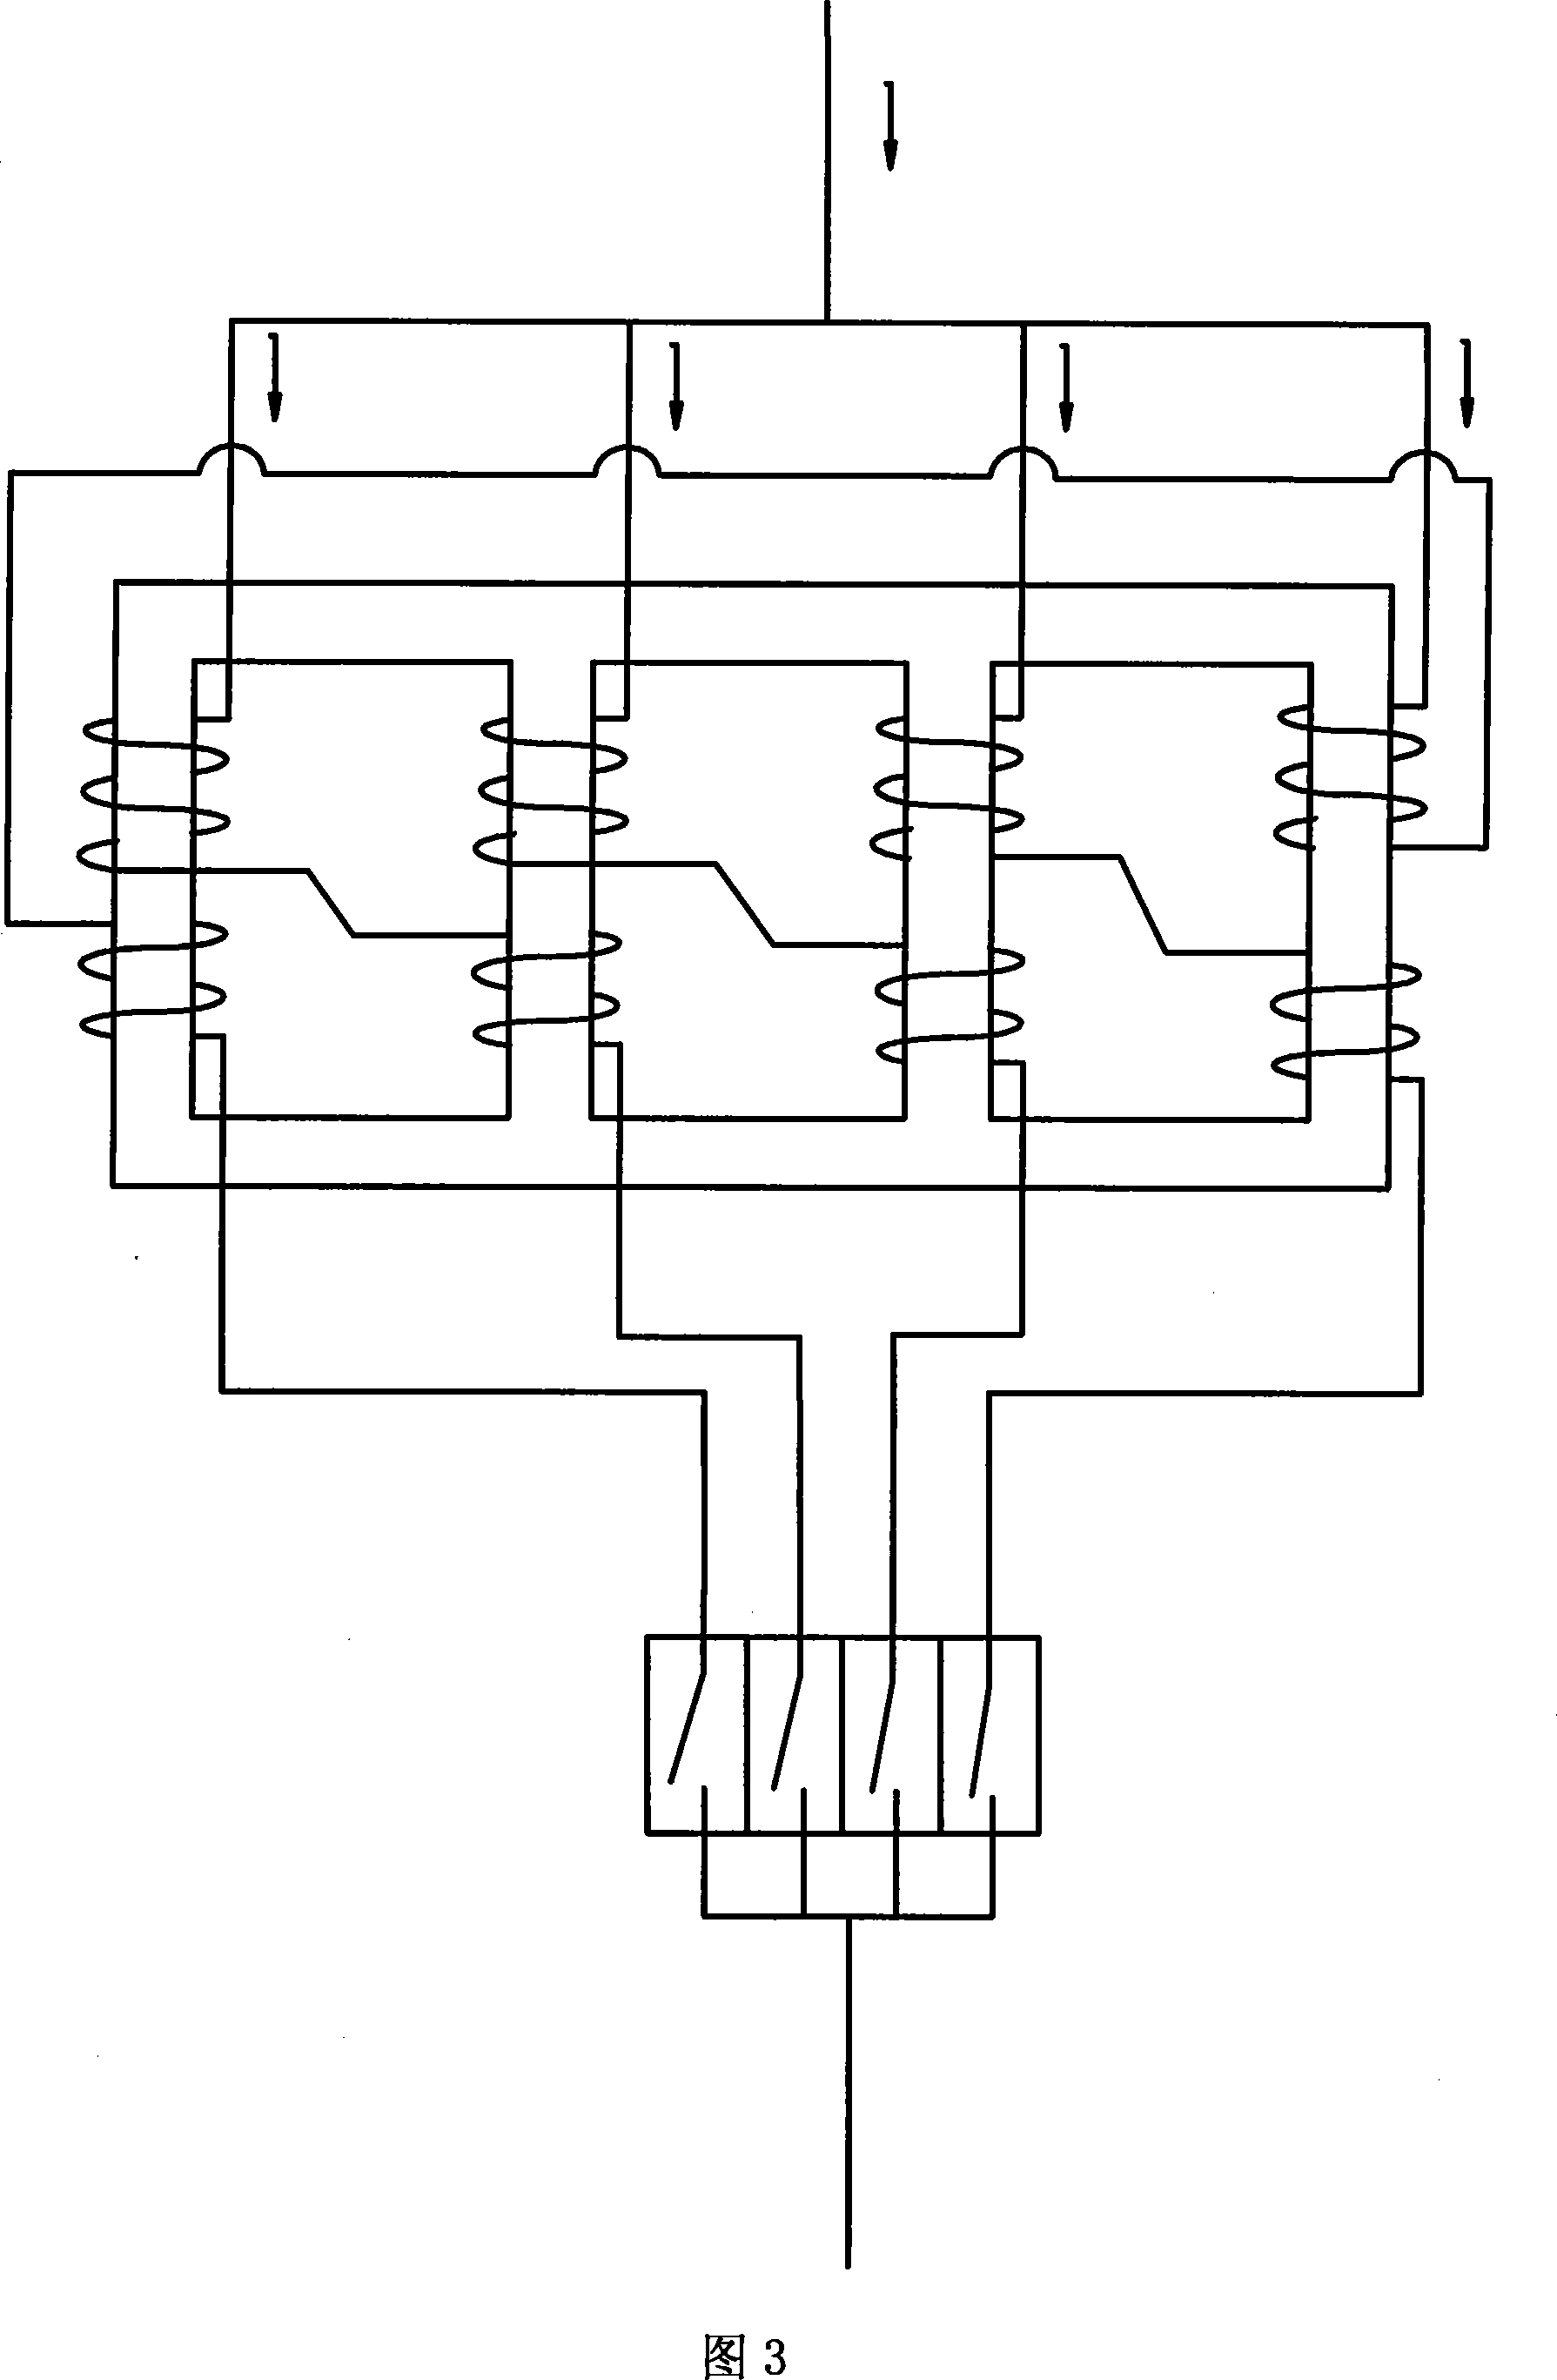 Parallel circuit breaker